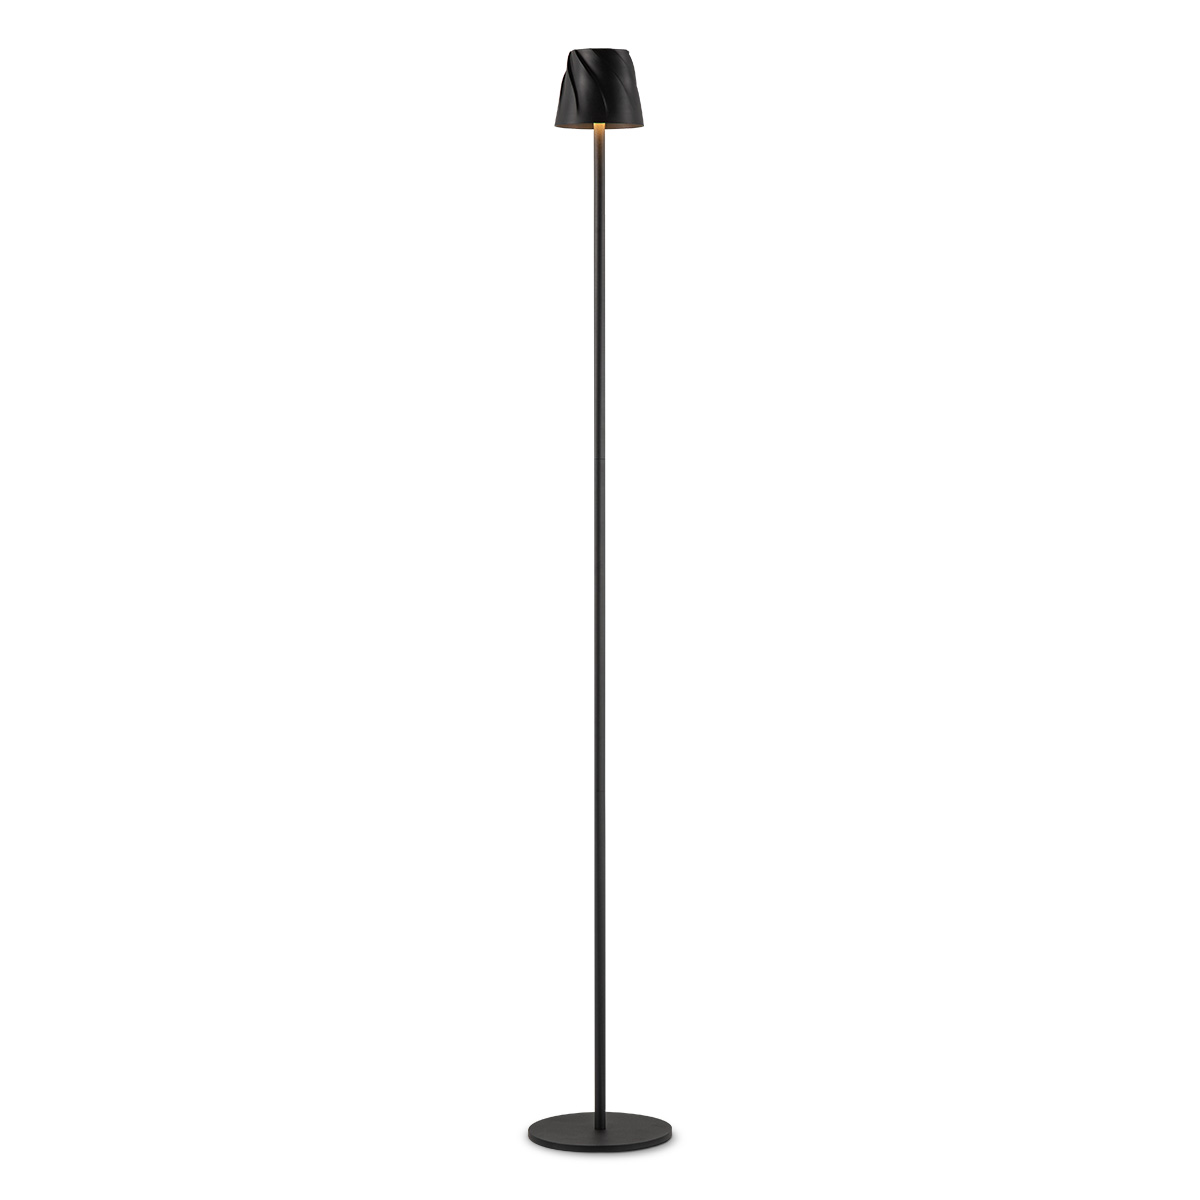 Tangla lighting - TLF7634-01BK - LED floor lamp - rechargeable plastic - black - whirl